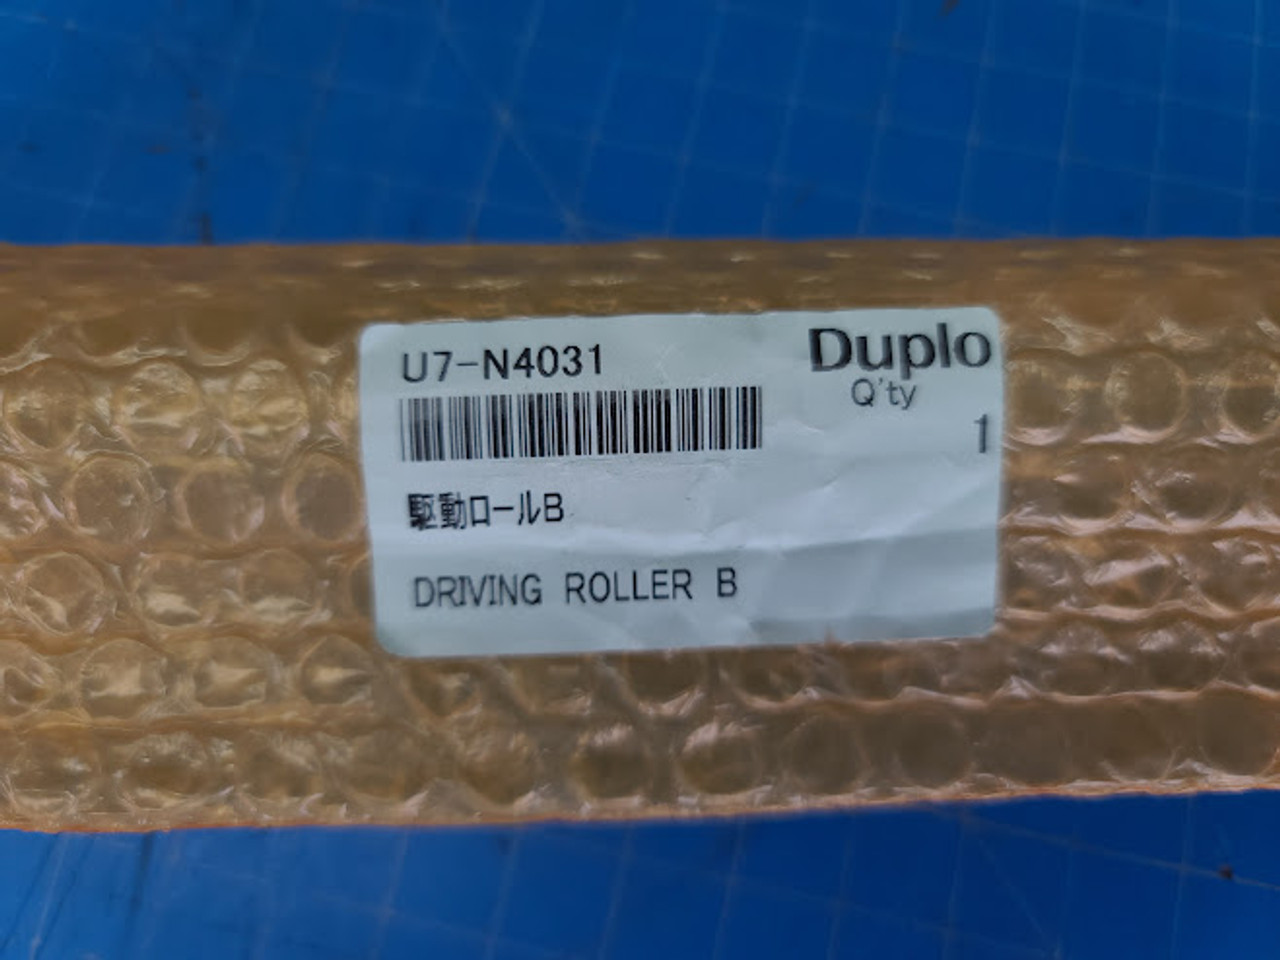 Duplo DC-745 Driving Roller B U7-N4031